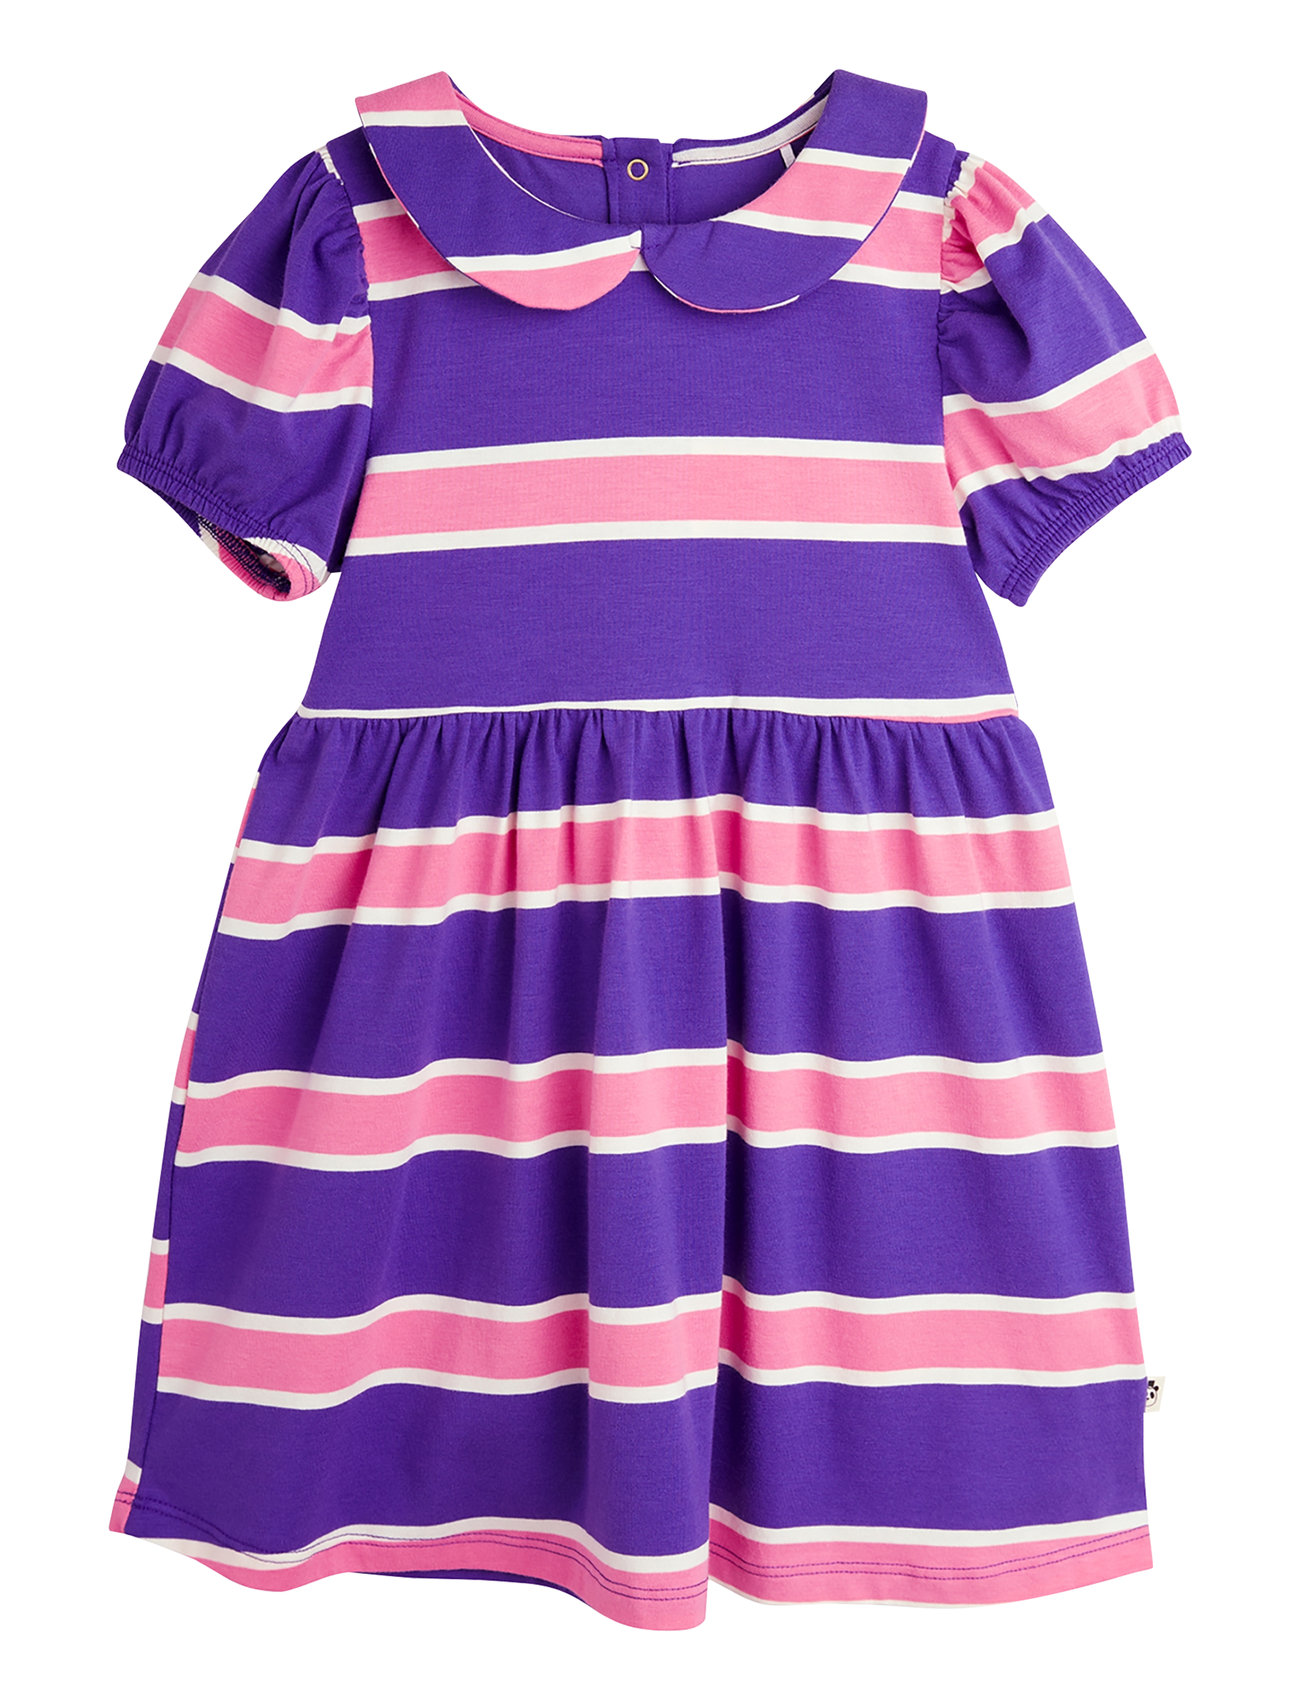 Stripe Ss Dress Dresses & Skirts Dresses Casual Dresses Short-sleeved Casual Dresses Multi/patterned Mini Rodini